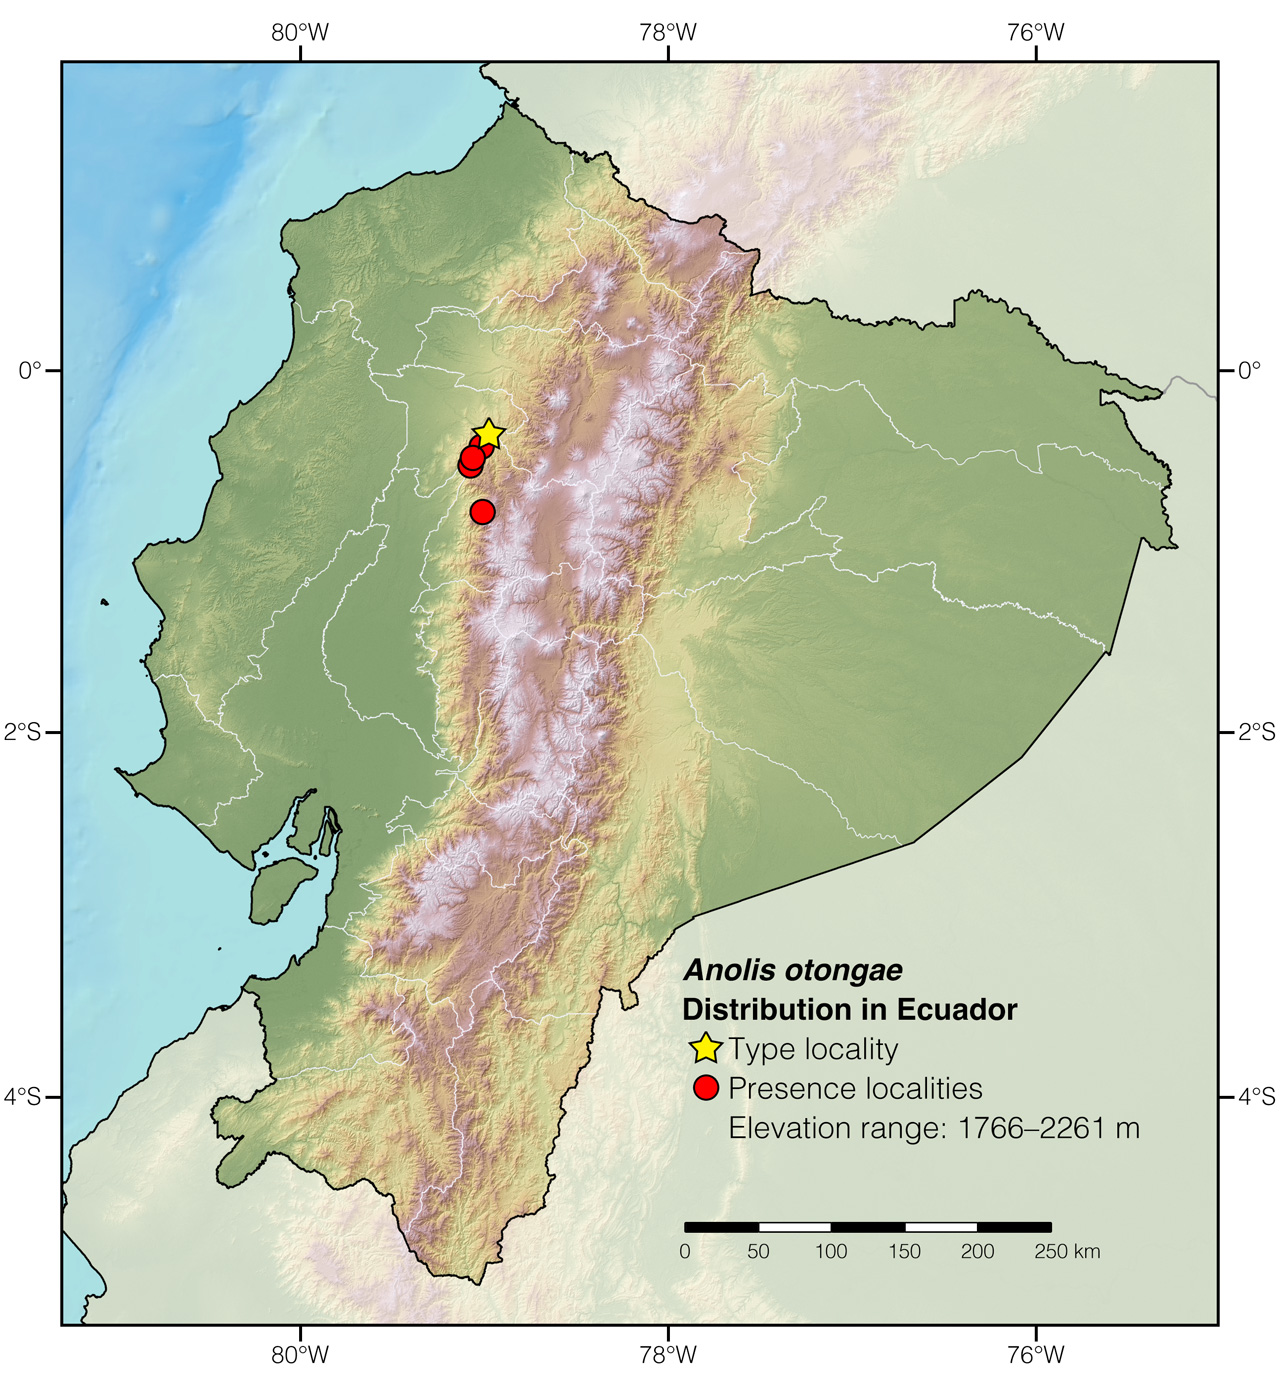 Distribution of Anolis otongae in Ecuador